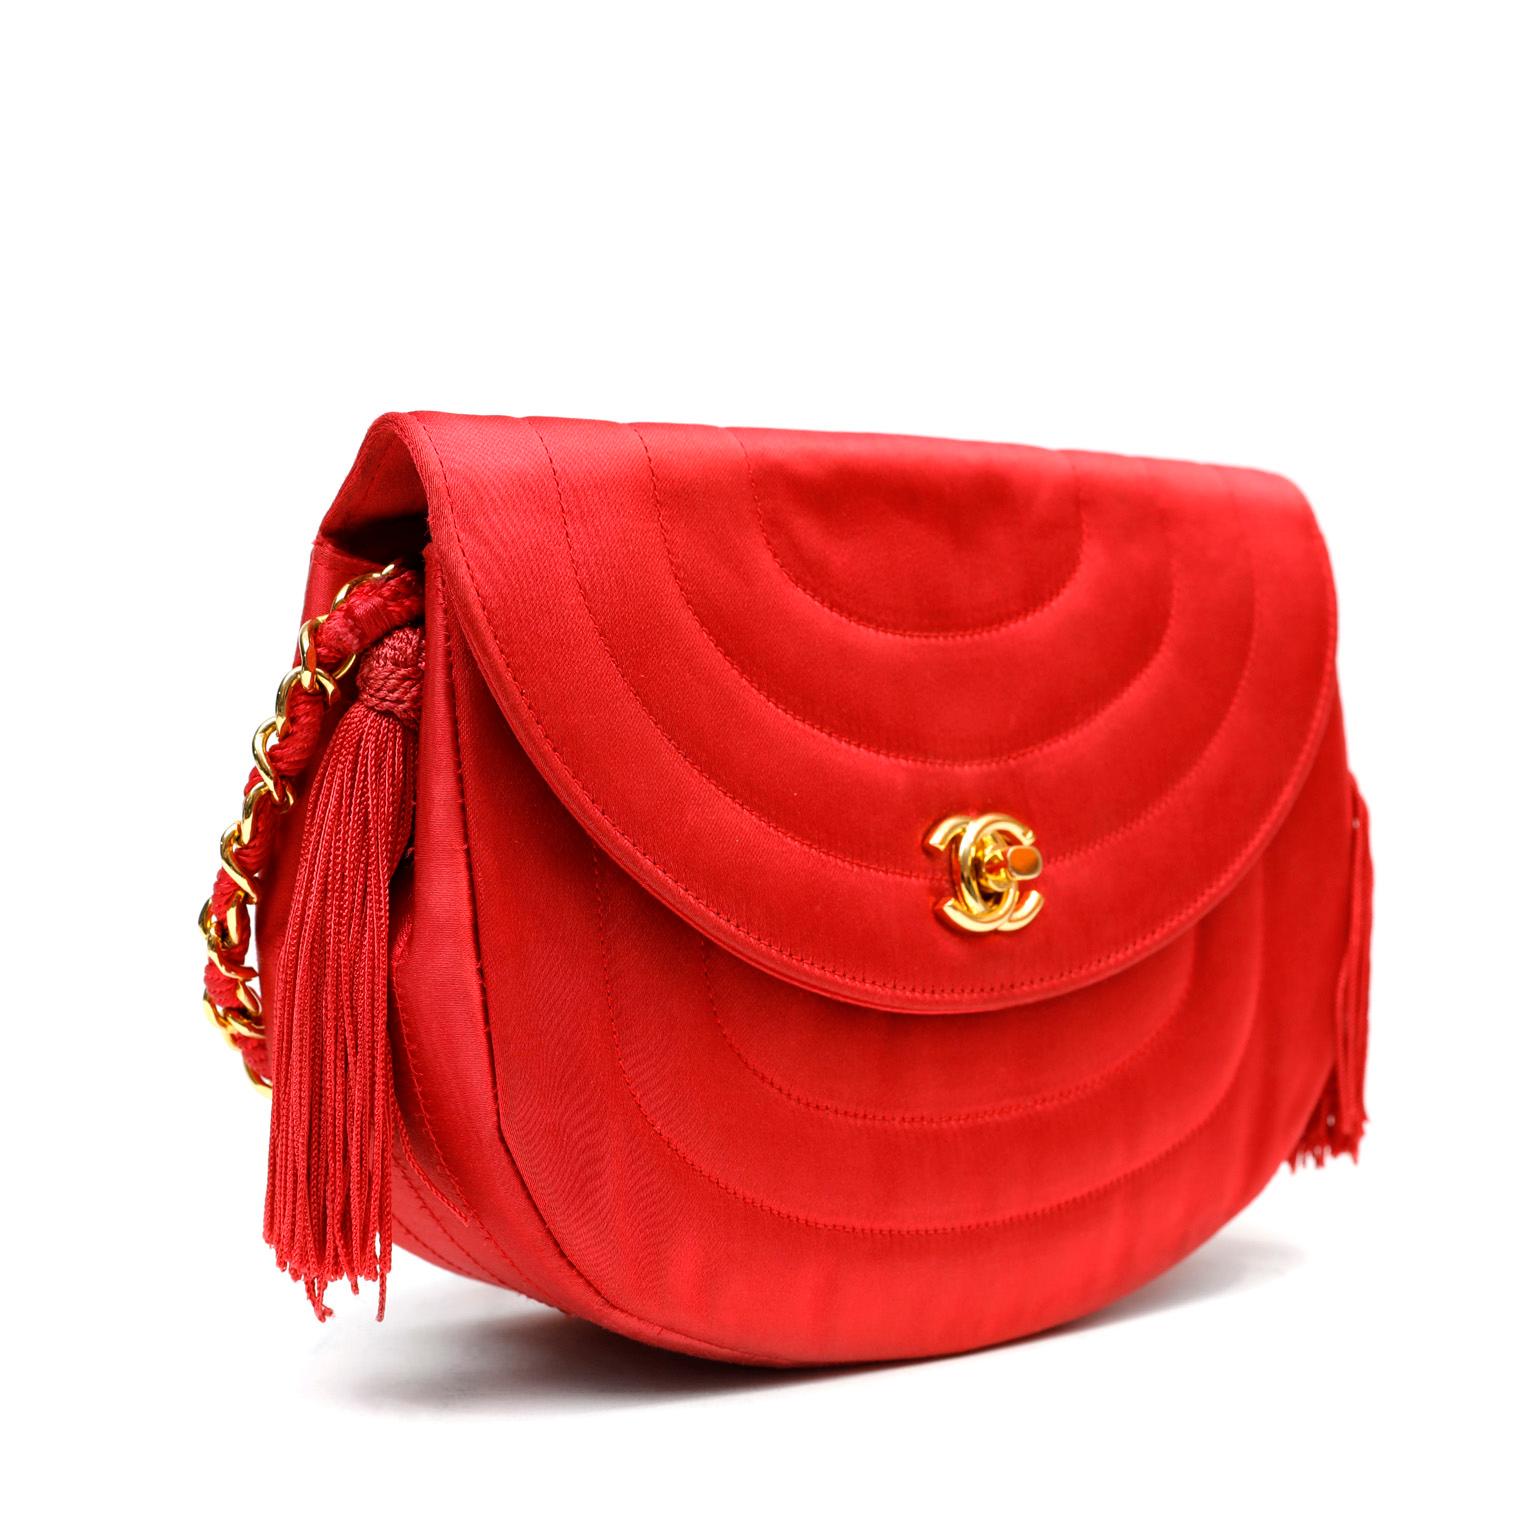 red satin evening bag